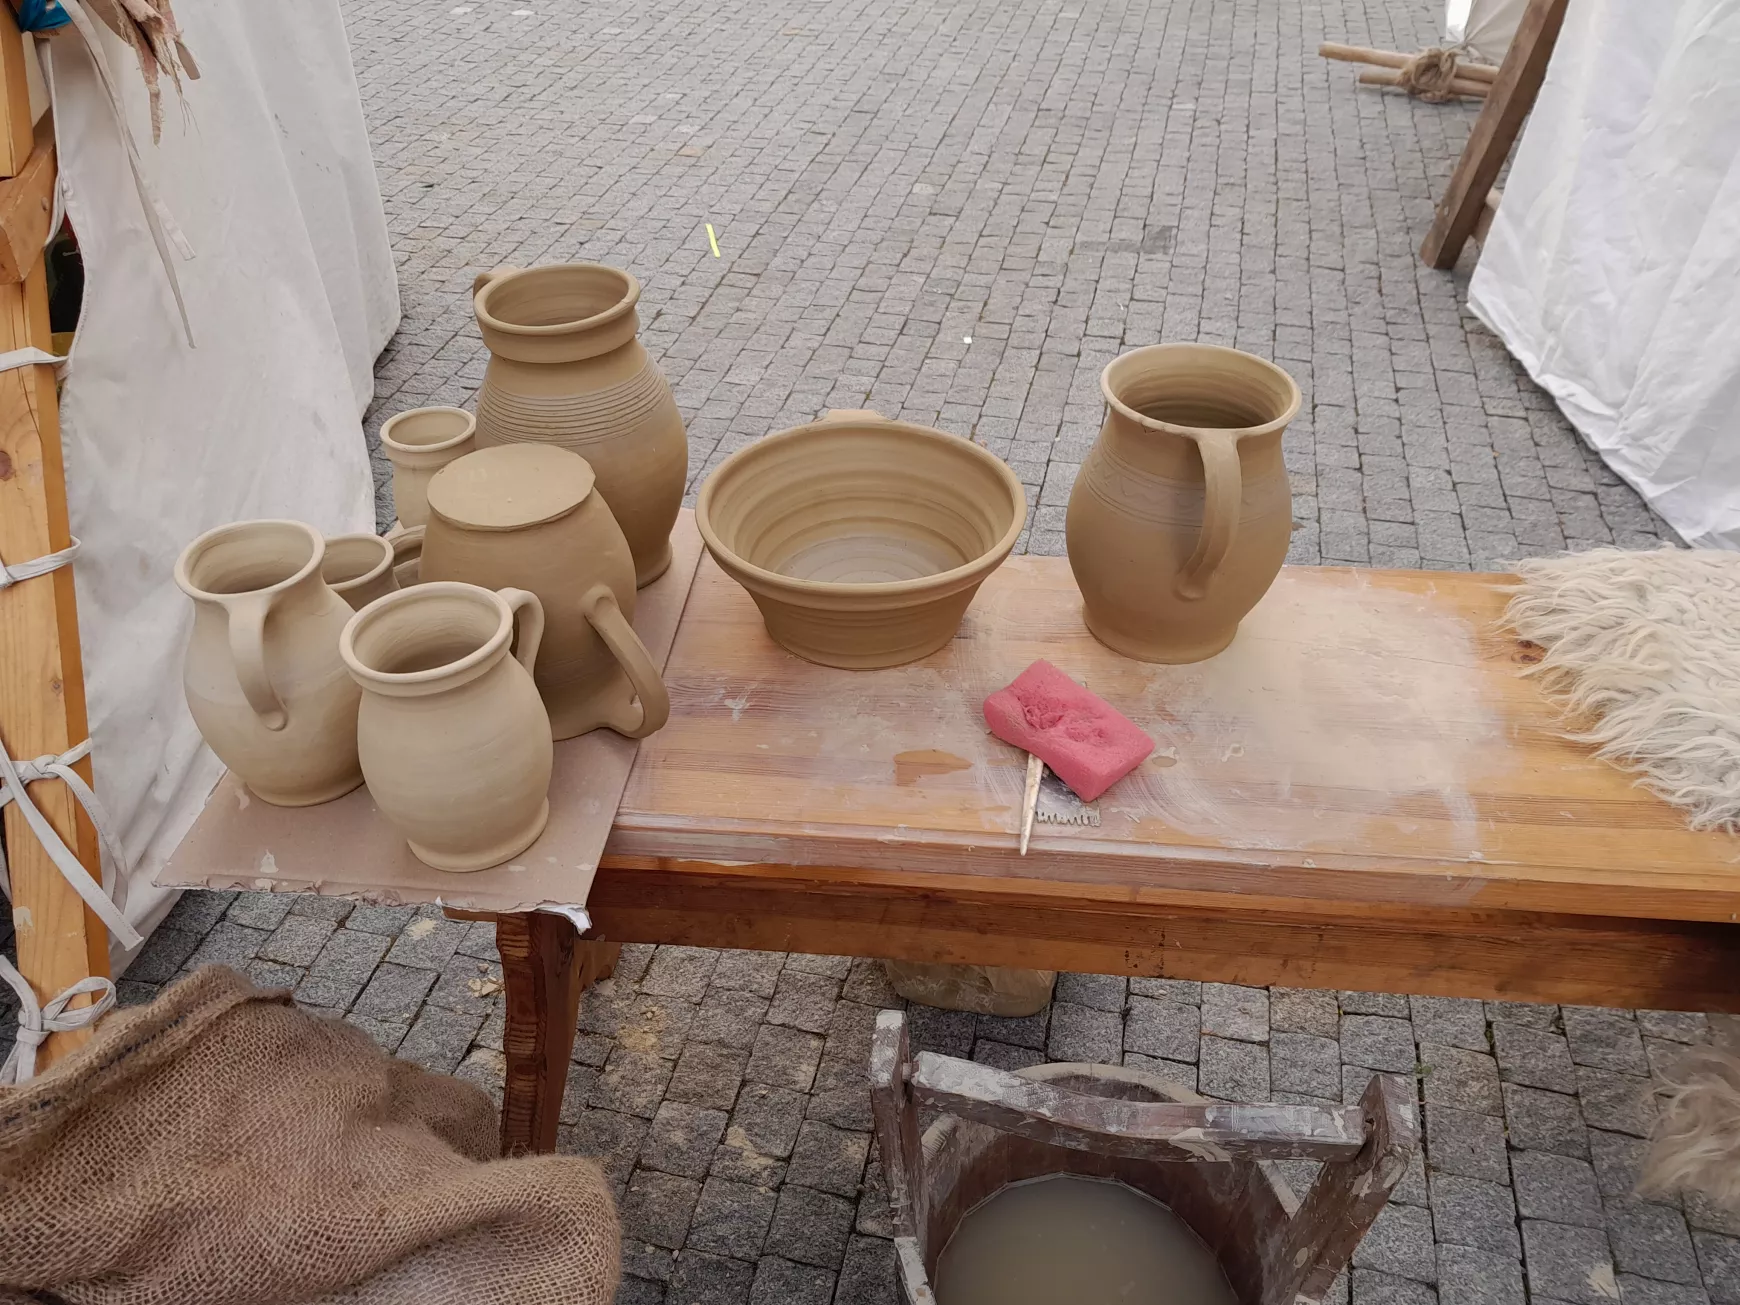 Középkori kézműves piac